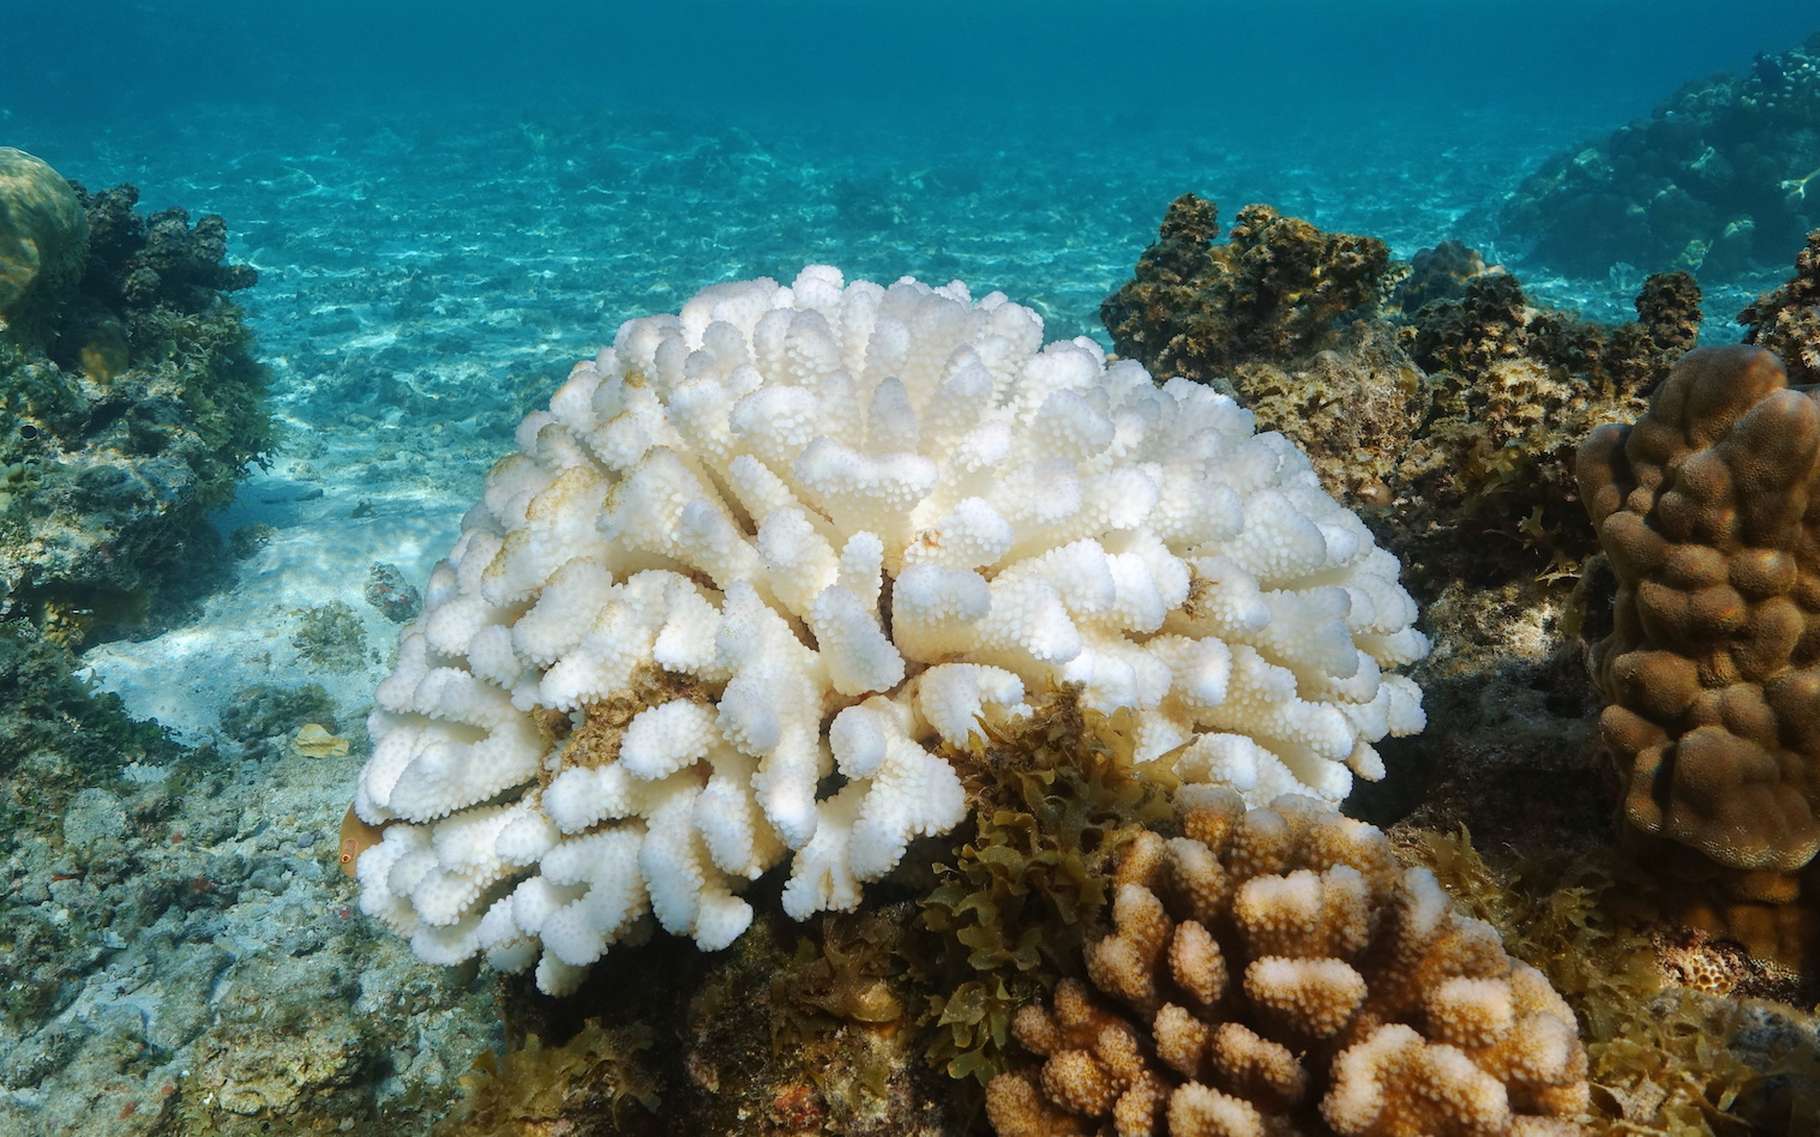 Une analyse de coraux permet à des chercheurs de Georgia Tech (États-Unis) de prouver que les épisodes El Niño sont devenus plus intenses à l’ère industrielle, ce qui aggrave les tempêtes, la sécheresse et le blanchissement des coraux au cours des années El Niño. © damedias, Adobe Stock